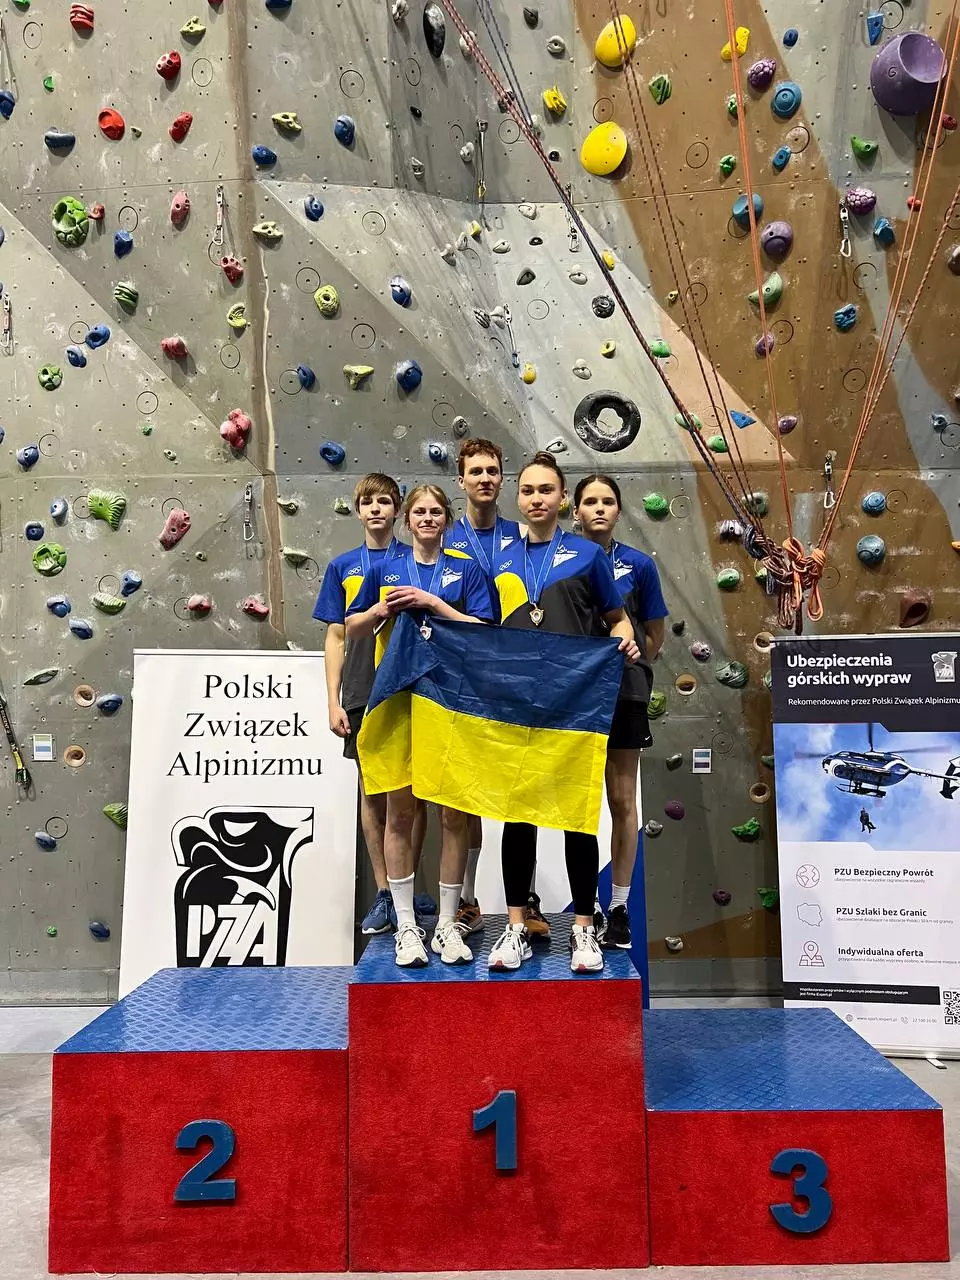 За результатами змагань українці здобули одну золоту, дві срібні, дві бронзові медалі. Фото Федерація альпінізму і скелелазіння України